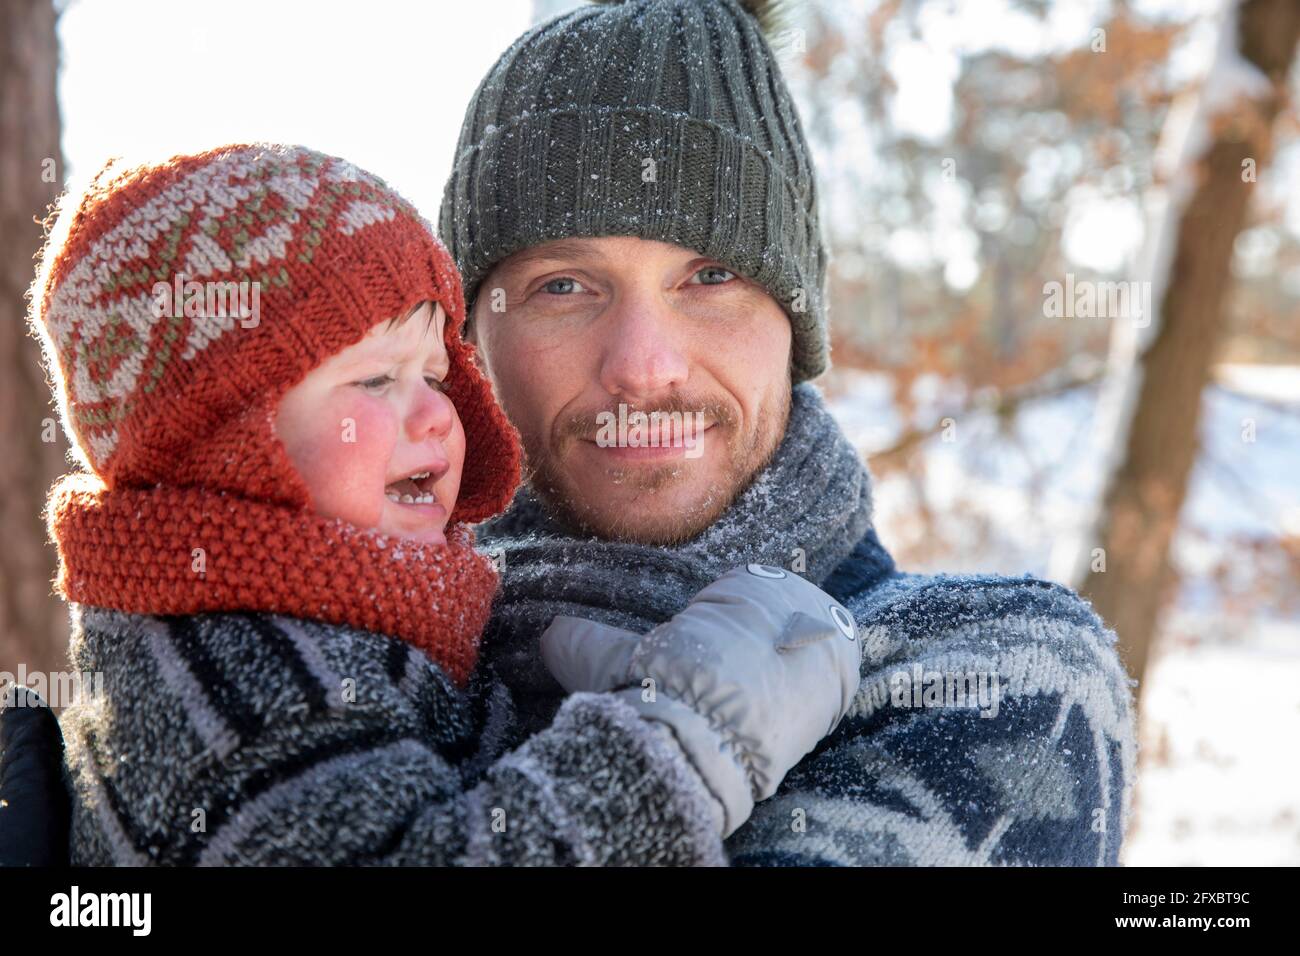 Père avec chapeau en tricot tenant le fils en pleurs pendant l'hiver Banque D'Images